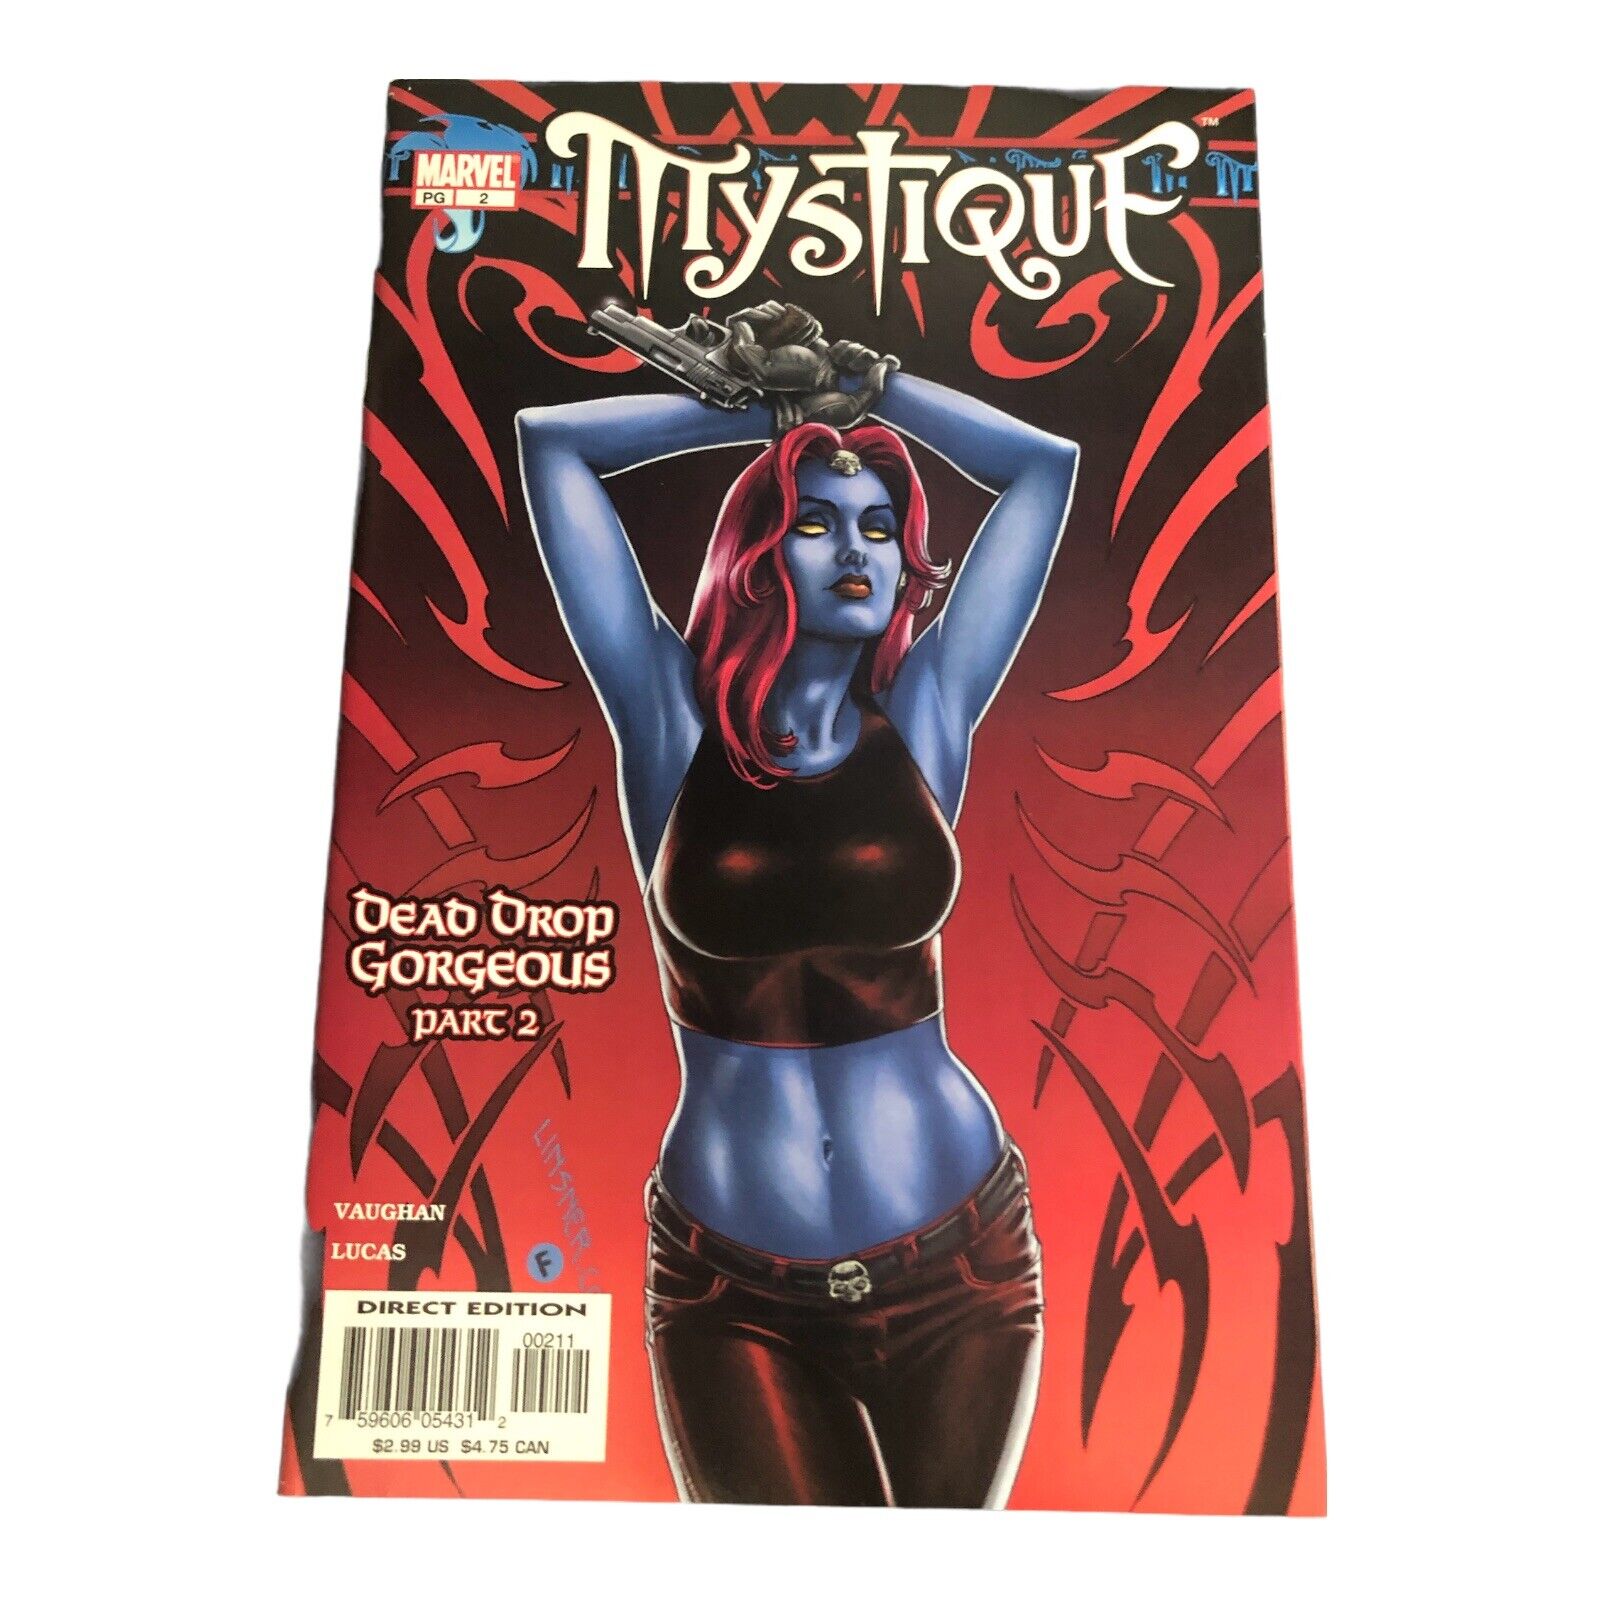 Mystique Issue # 2 Drop Dead Gorgeous 2003 Marvel Comics